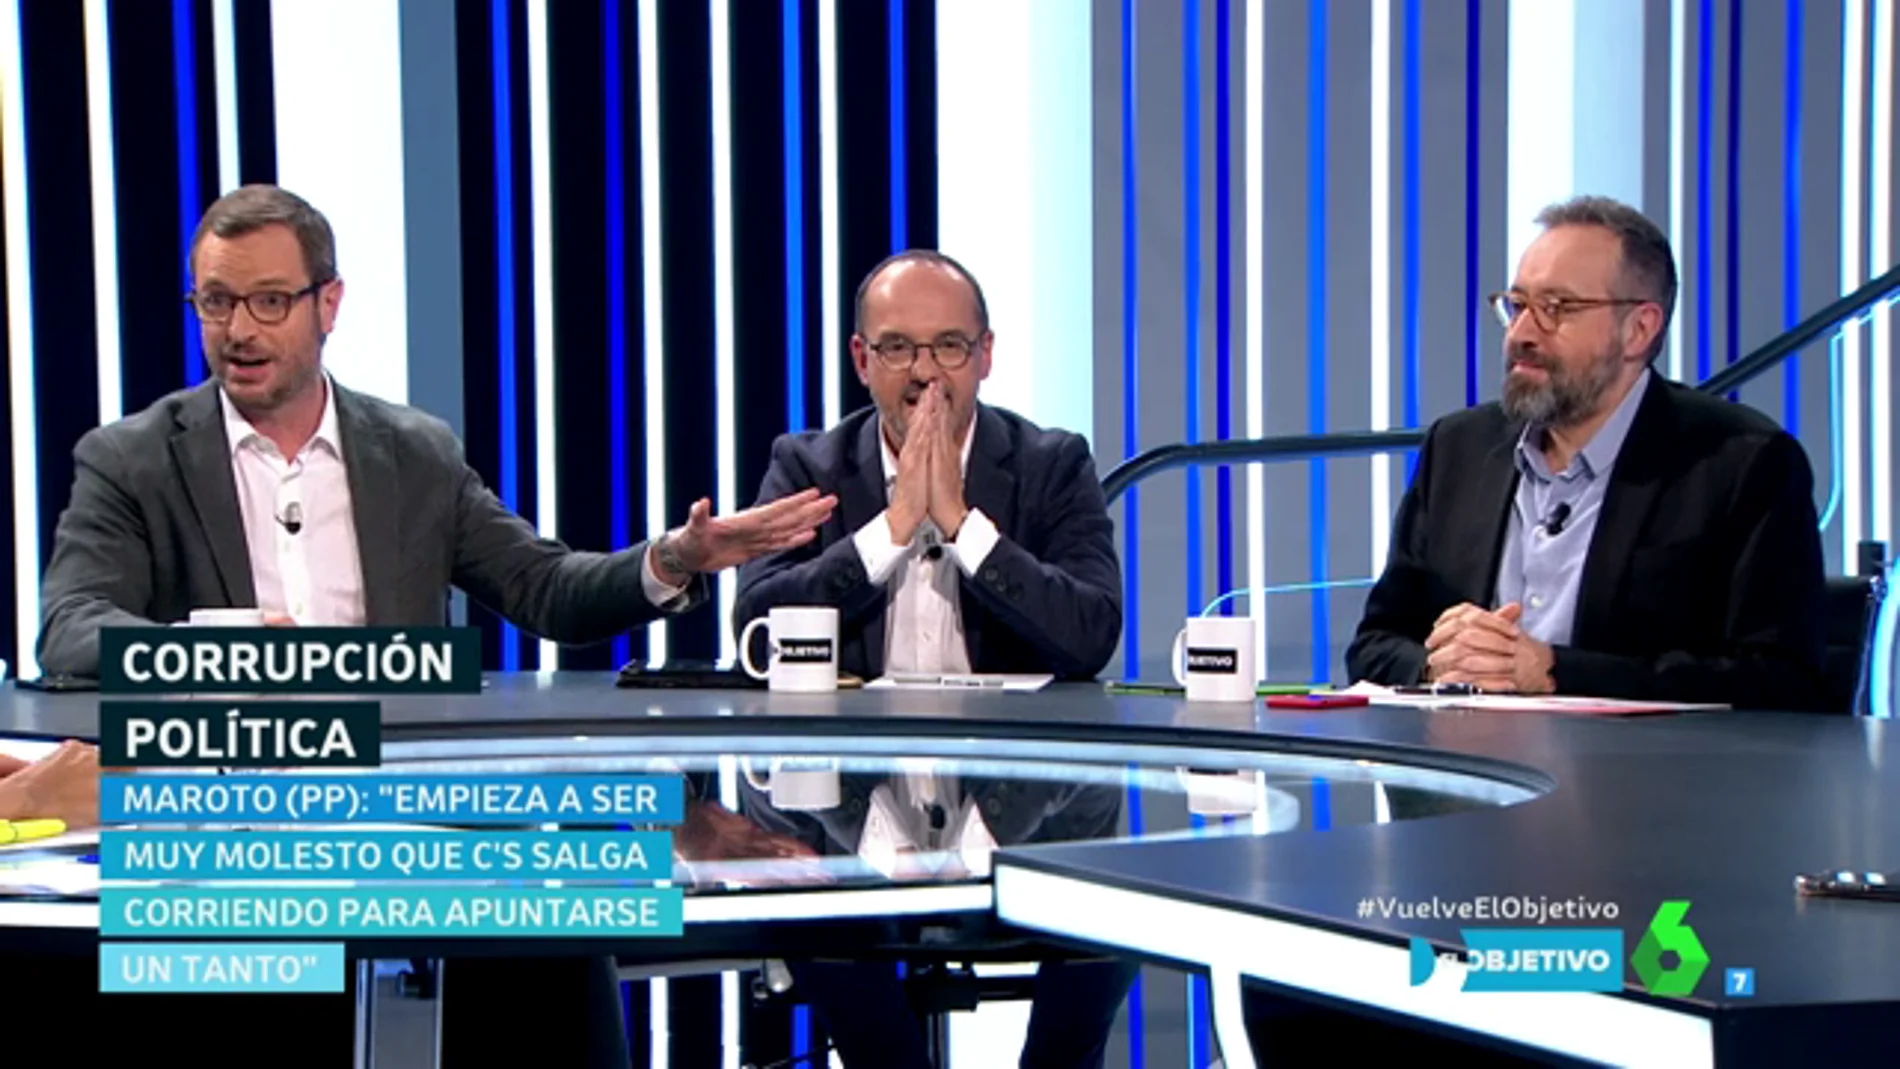 Javier Maroto, Carles Campuzano y Juan Carlos Girauta